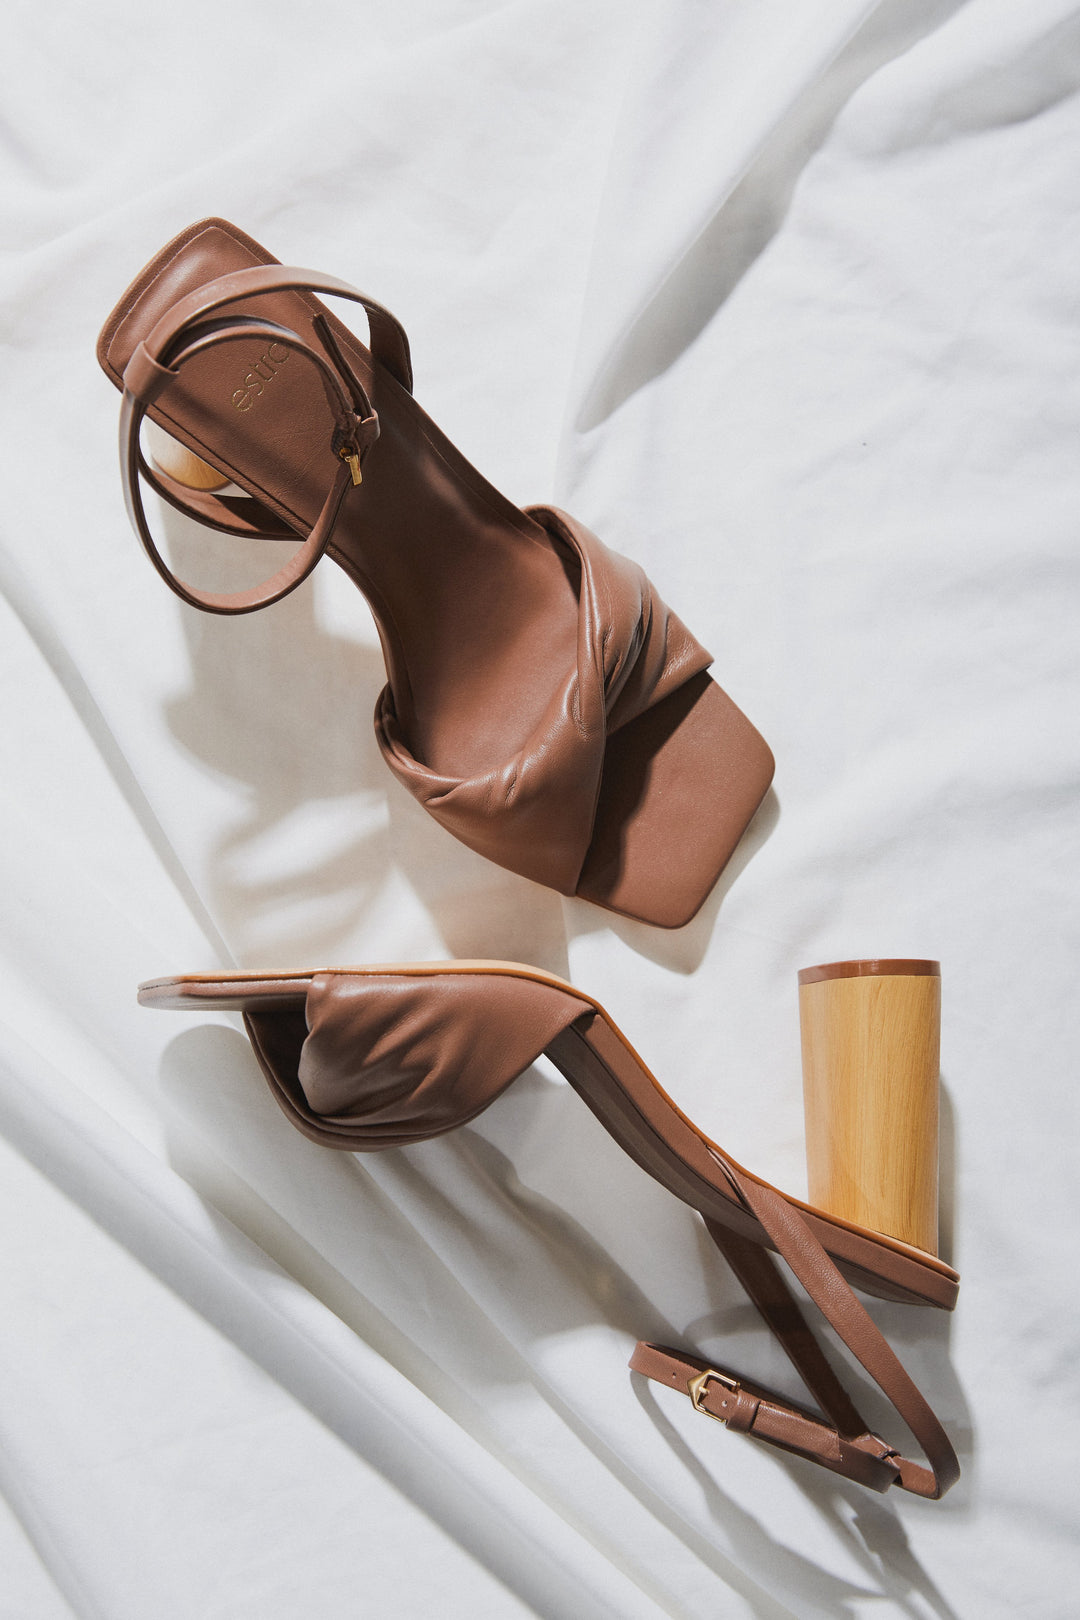 Skórzane sandały damskie na słupku Estro w kolorze brązowym zapinane na kostce.